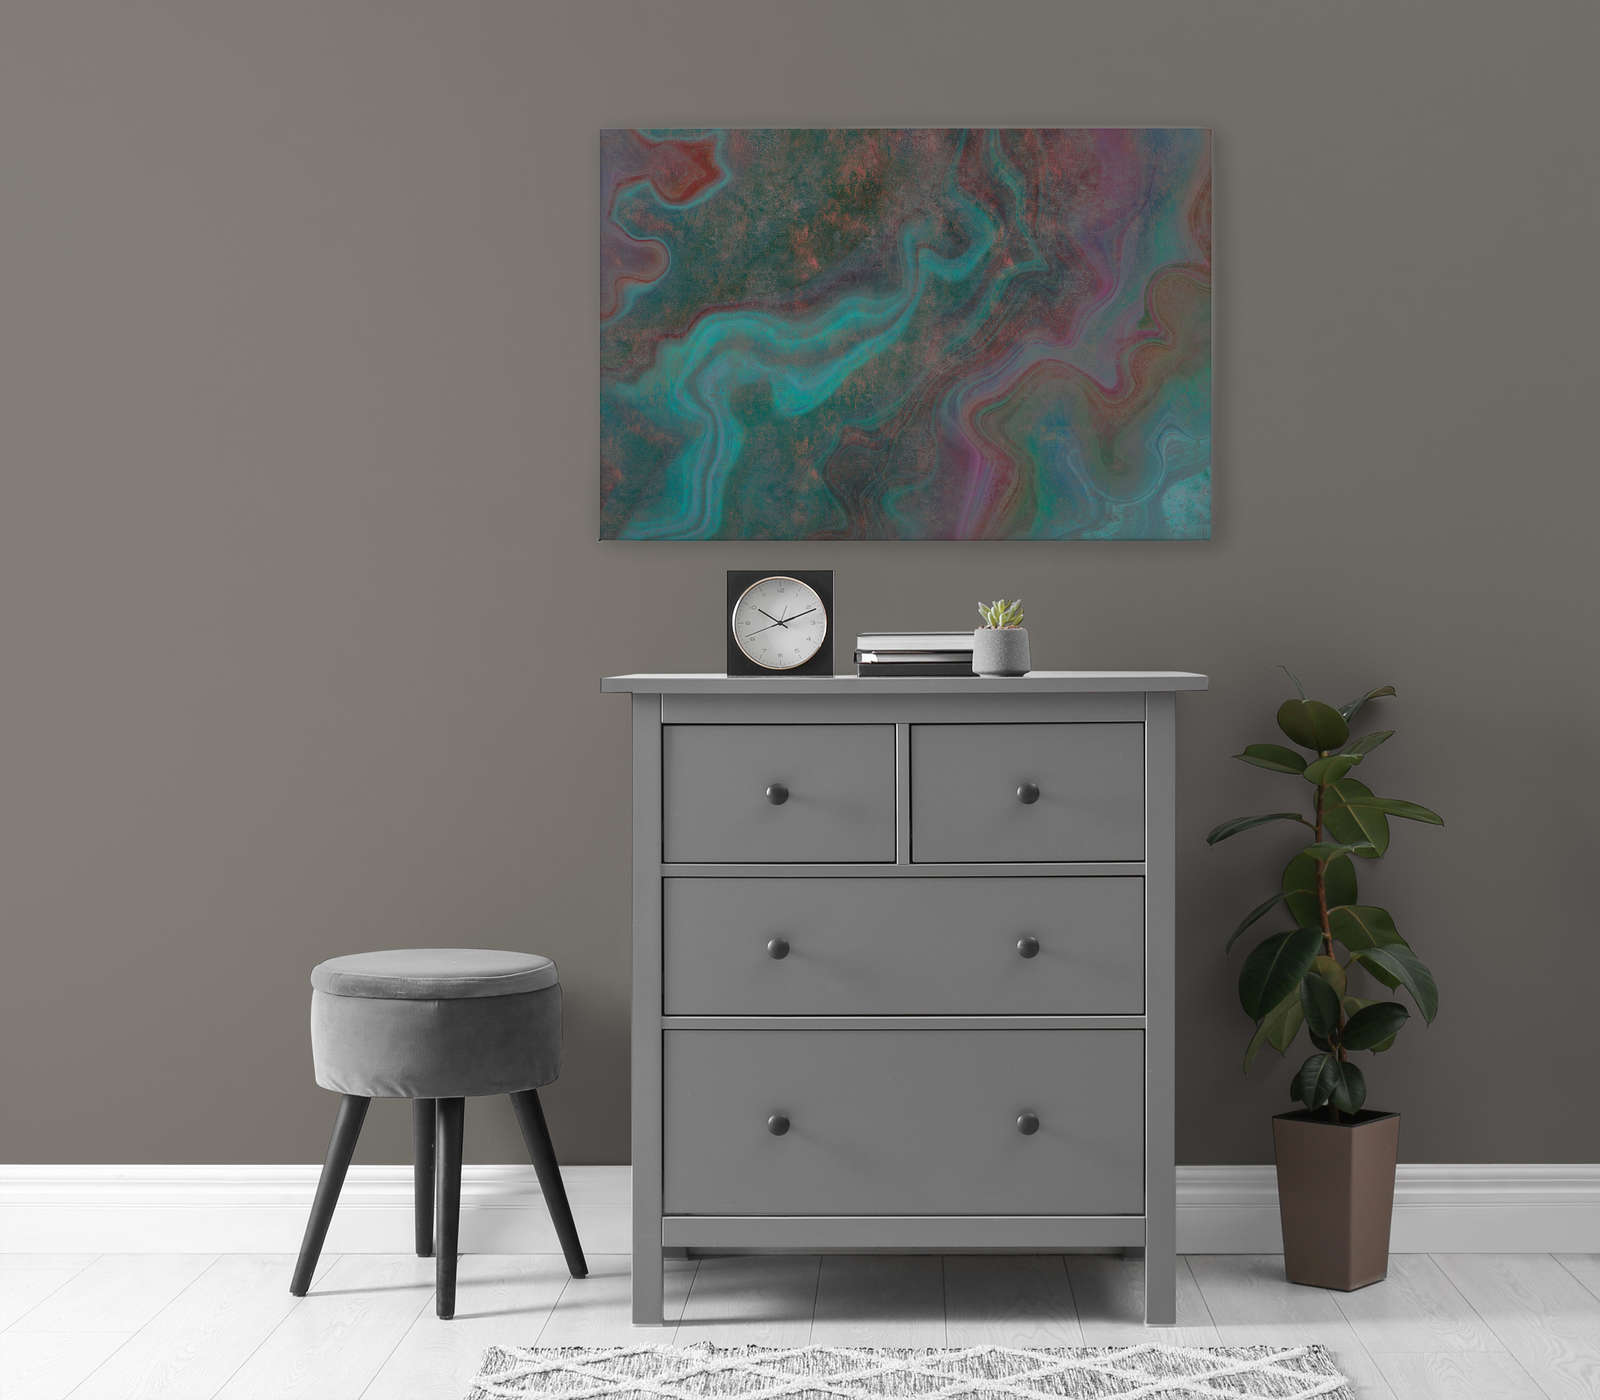             Marble 3 - Tableau sur toile avec structure rayée en aspect marbre coloré pour mettre en valeur - 1,20 m x 0,80 m
        